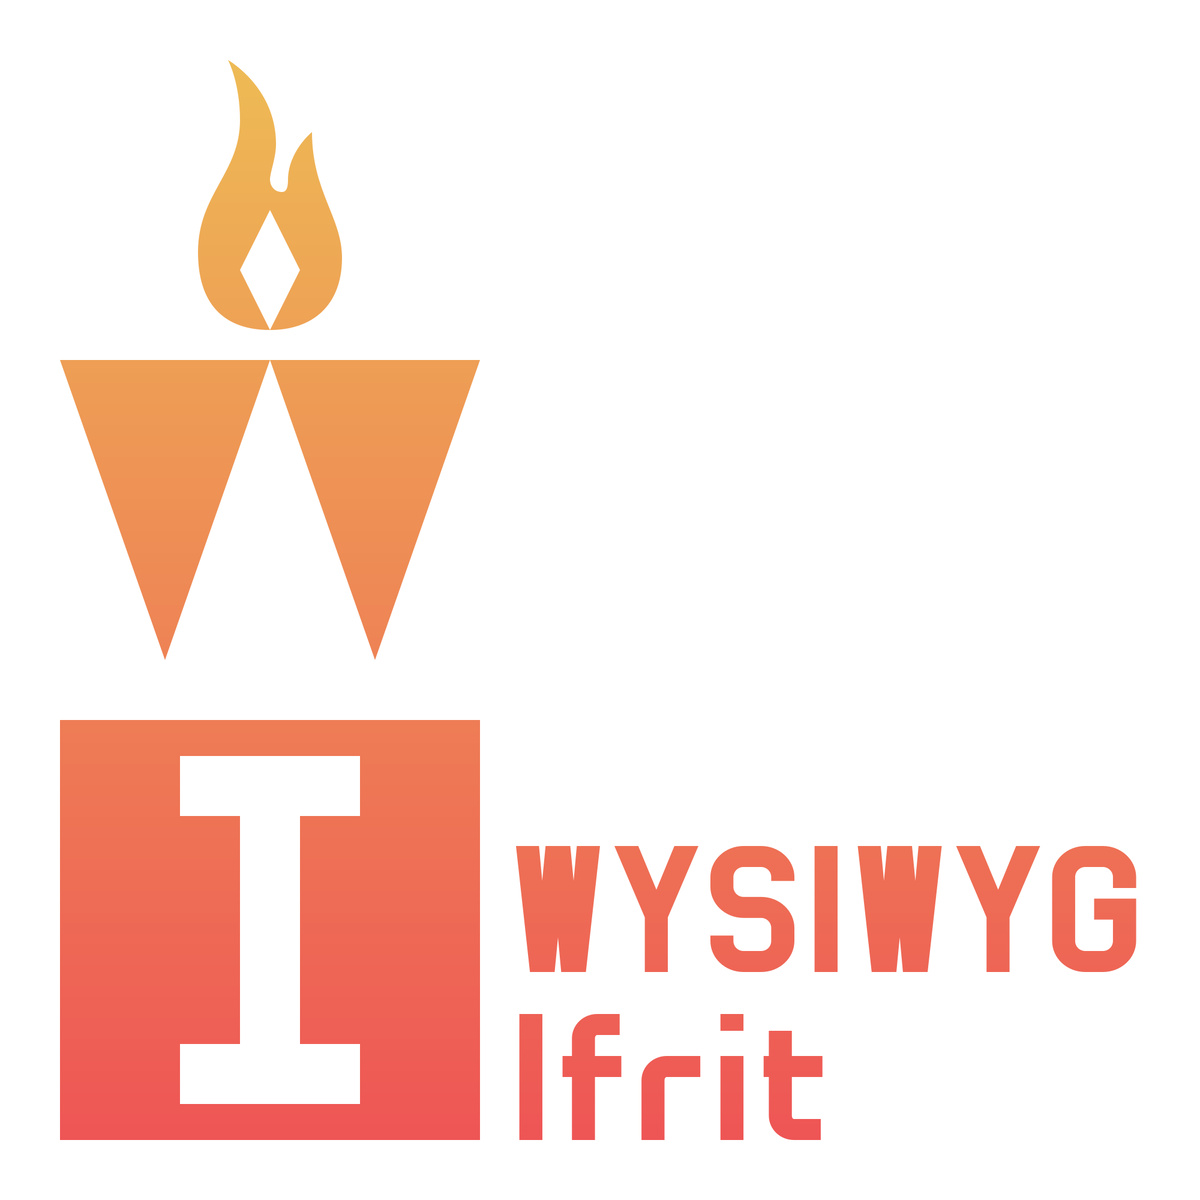 WYSIWYG Ifrit ロゴ